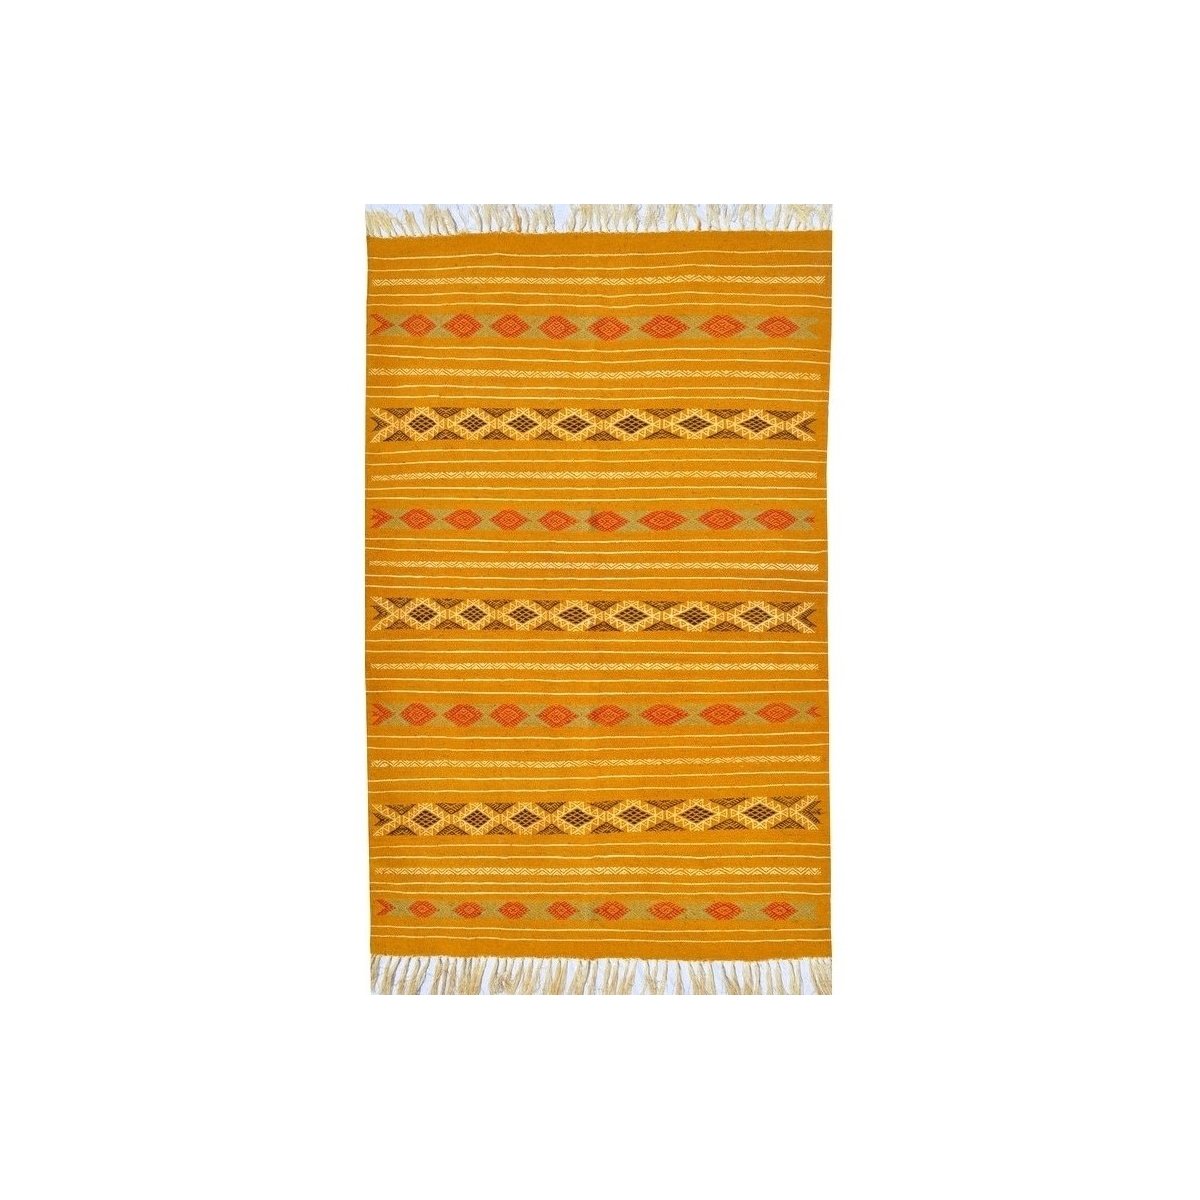 tappeto berbero Tappeto Kilim Fahs 100x150 Giallo/Bianco (Fatto a mano, Lana) Tappeto kilim tunisino, in stile marocchino. Tappe